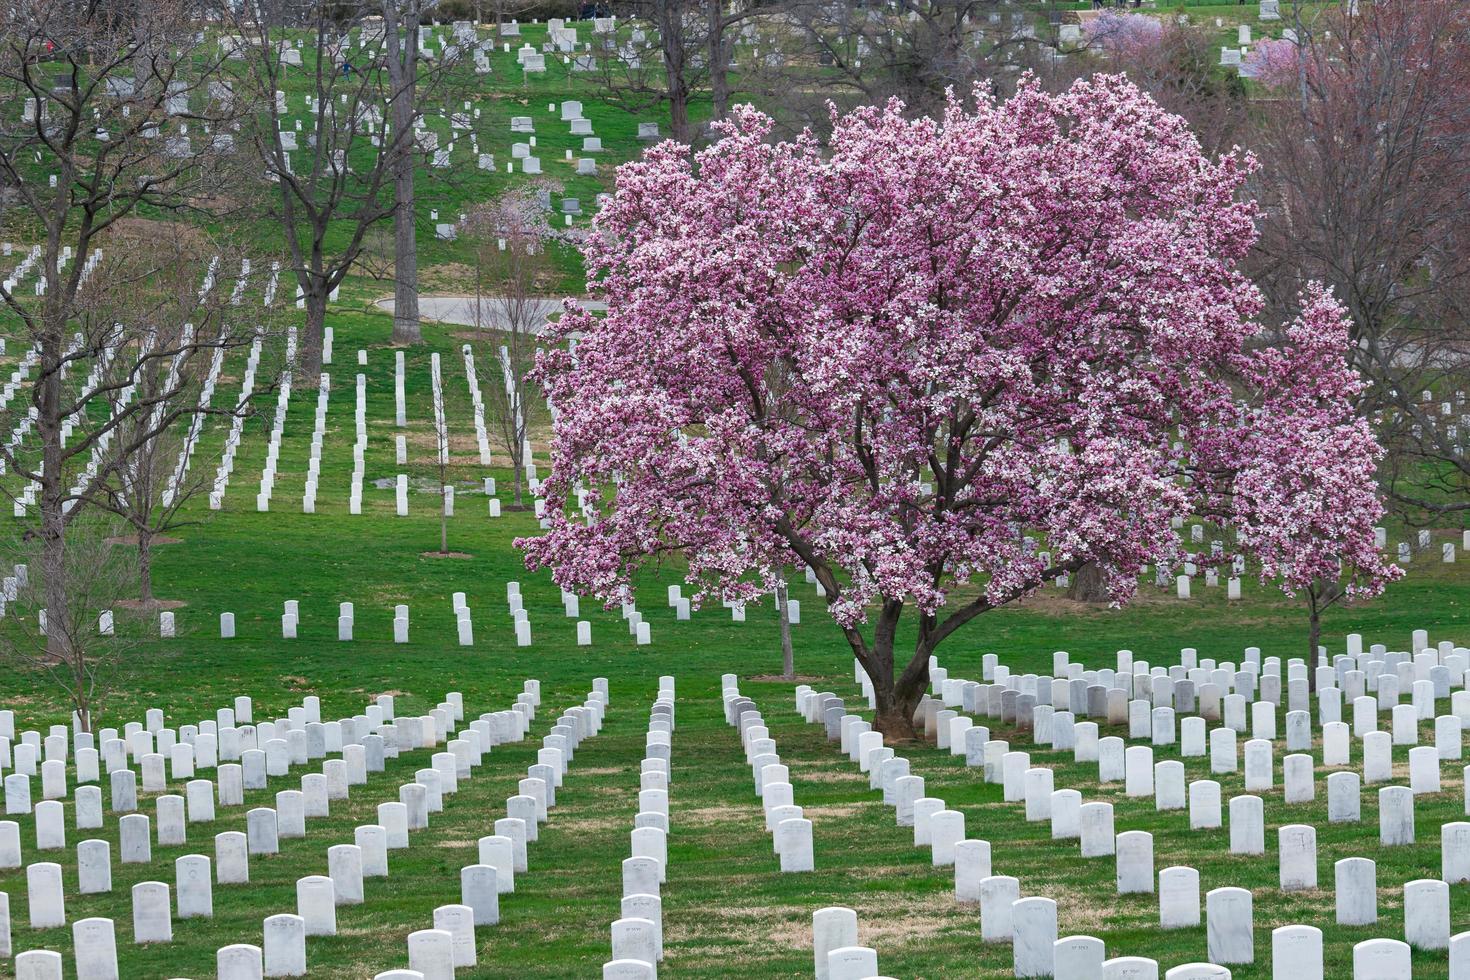 Cimetière national d'Arlington avec de belles fleurs de cerisier et pierres tombales, Washington DC, USA photo